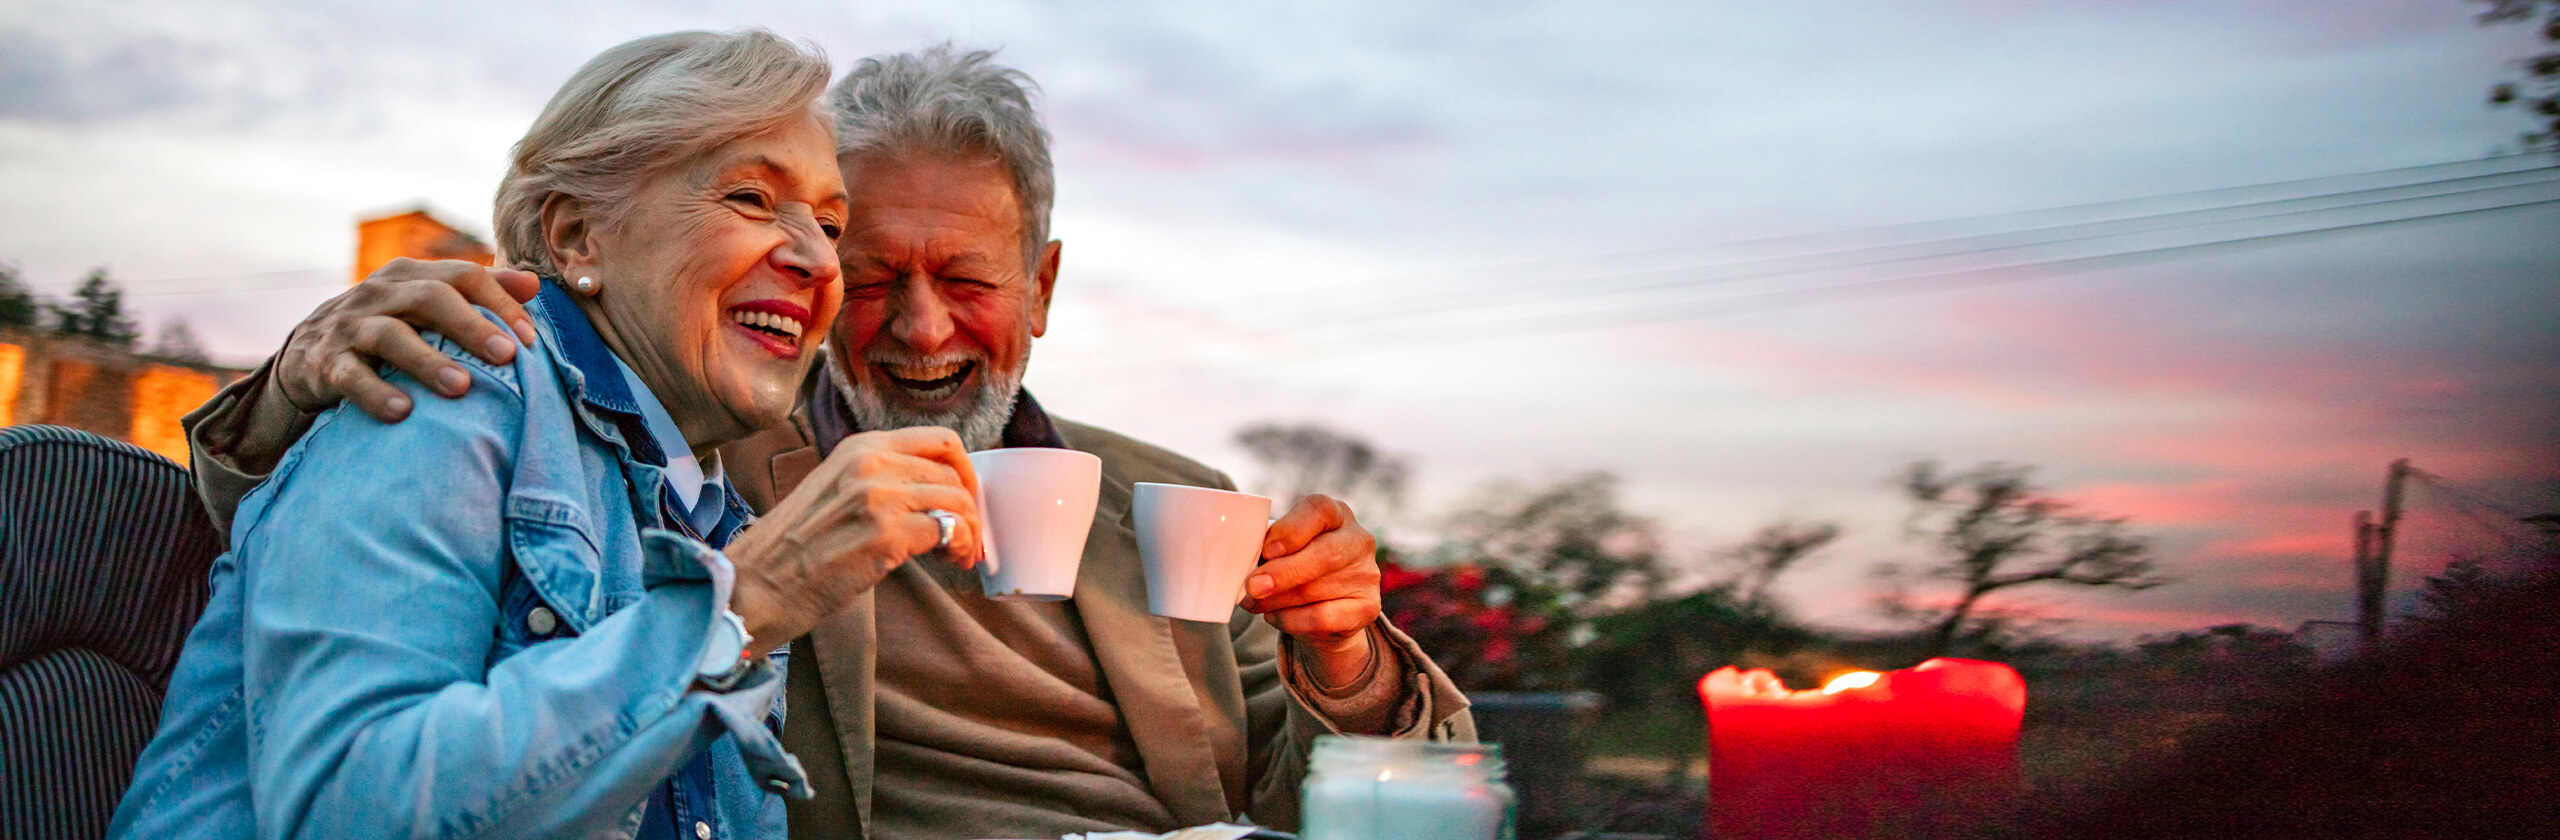 Seniorenpaar genießt abends zusammen eine Tasse Tee